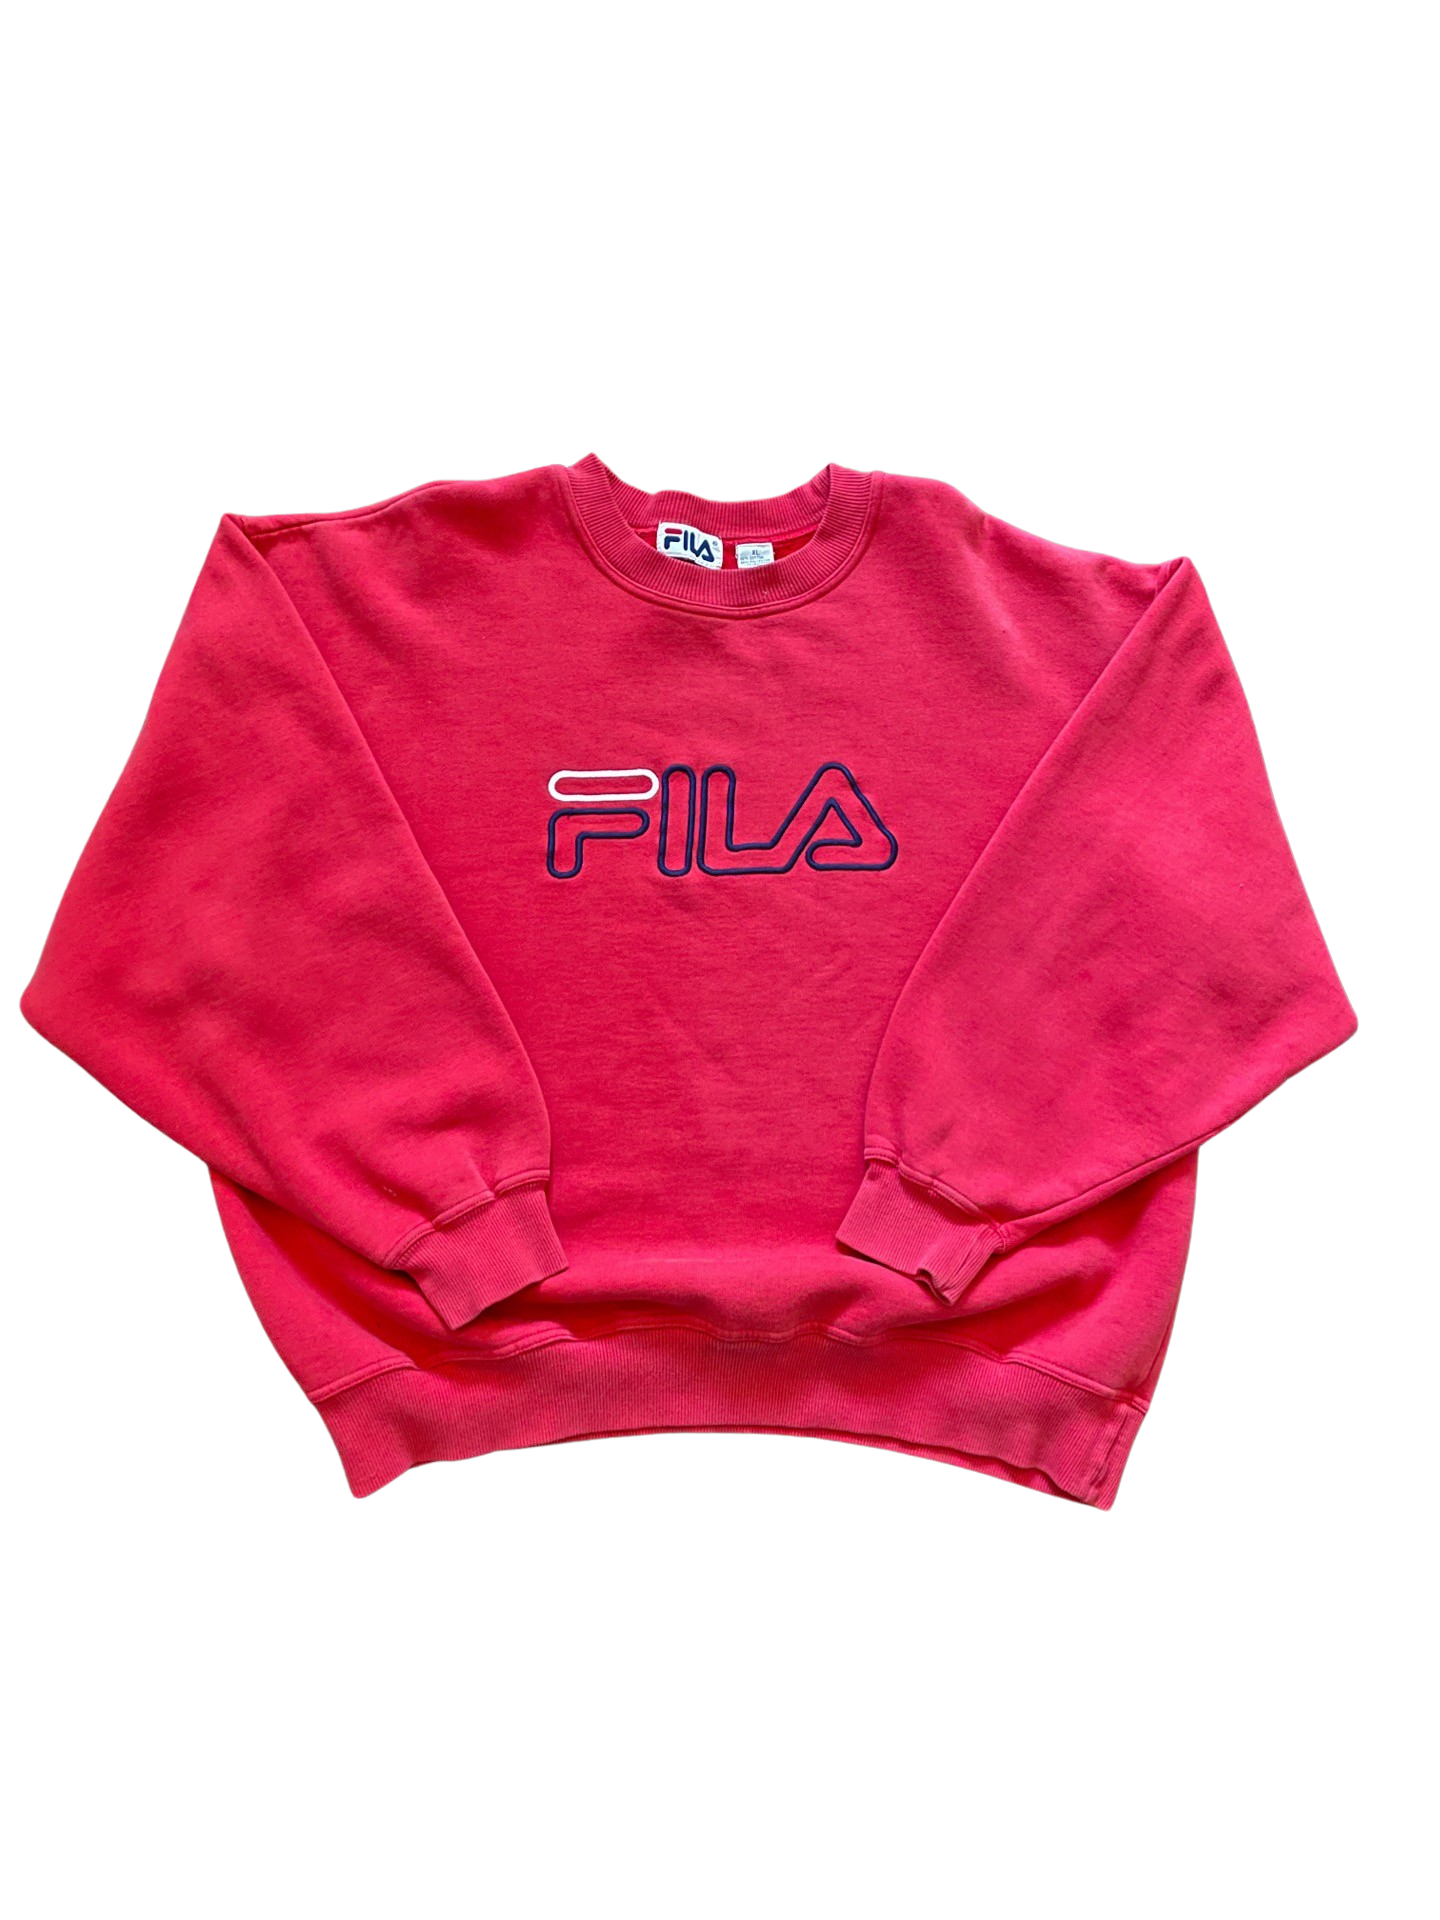 Vintage Fila Sweatshirt